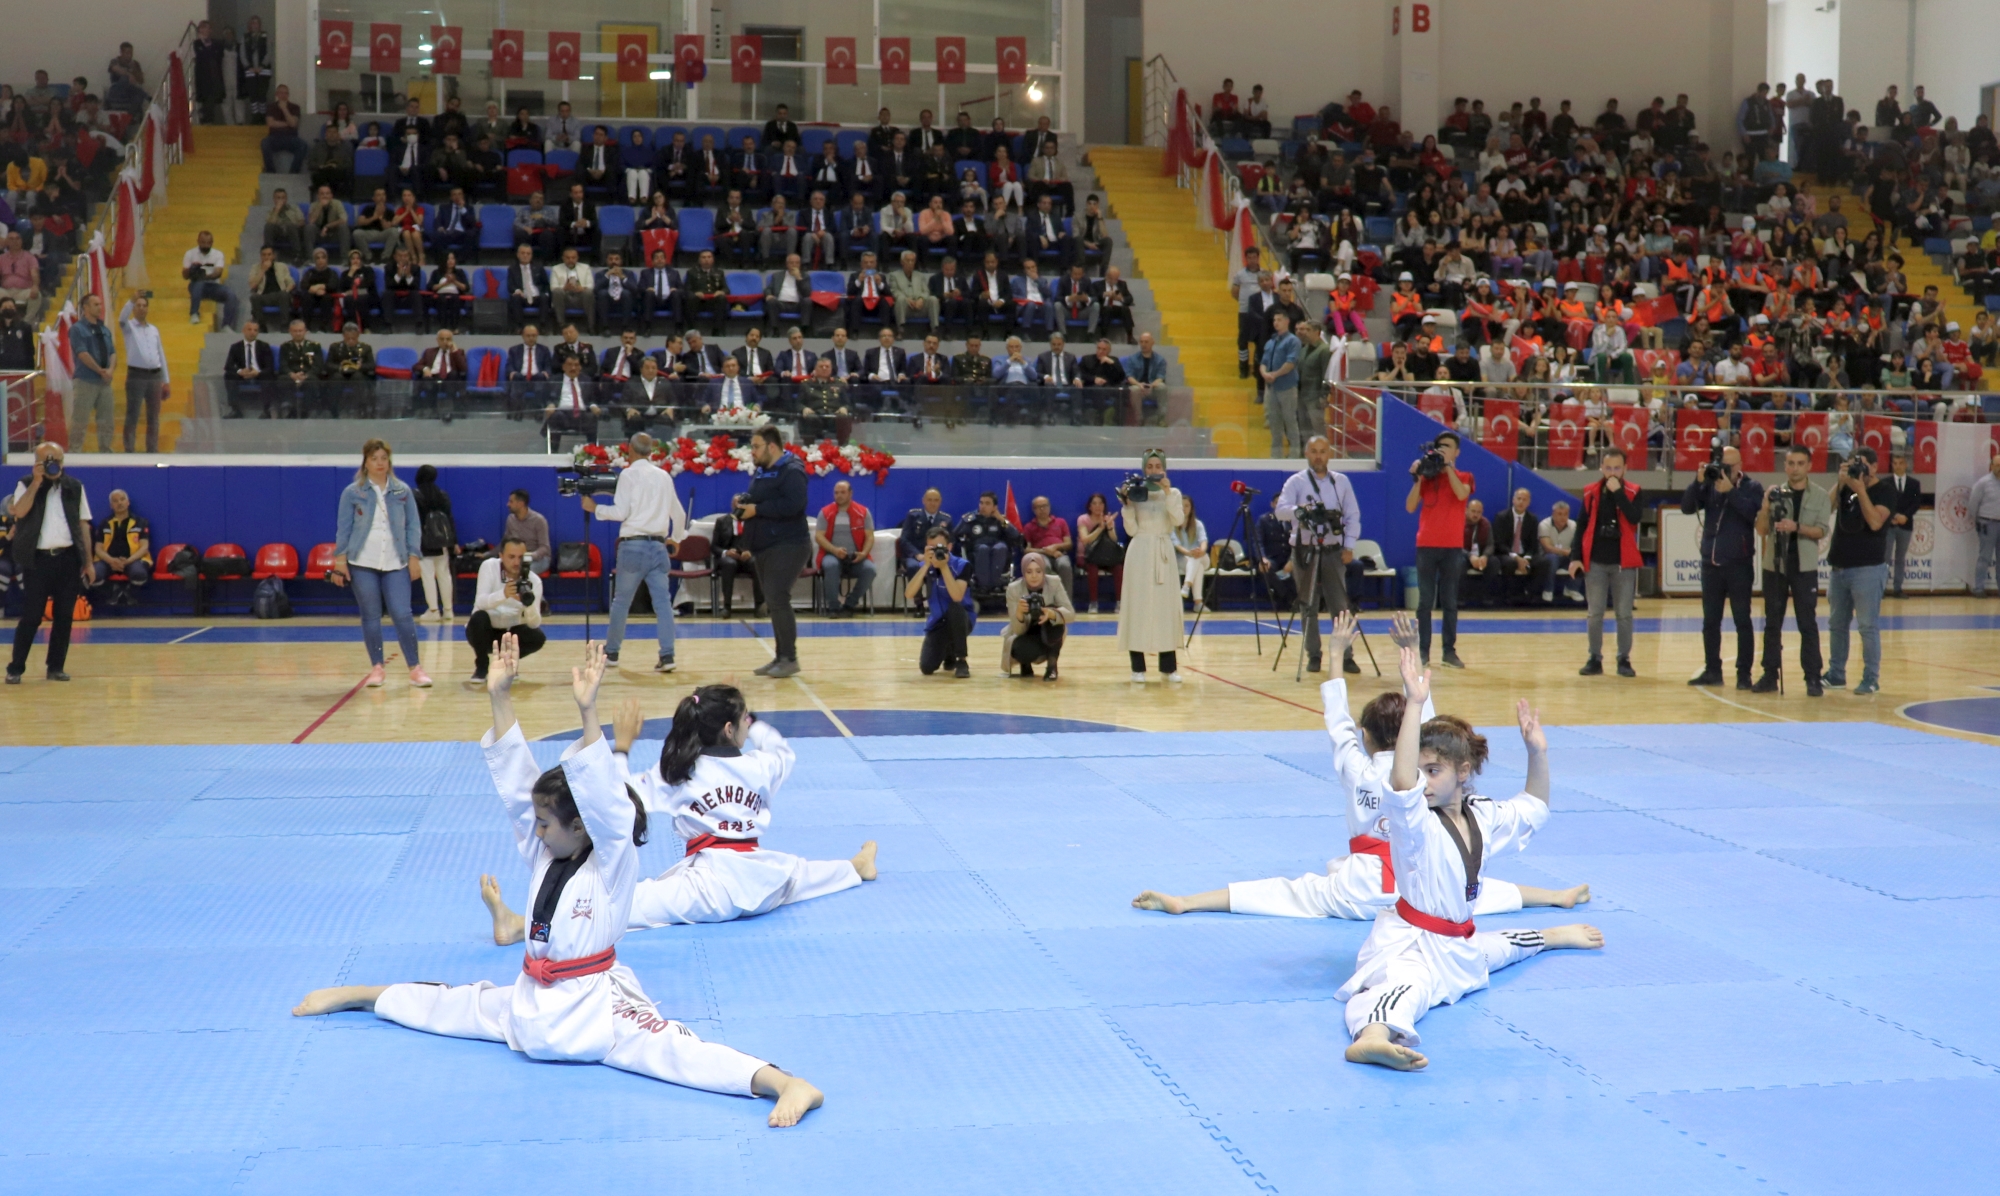 19 Mayıs Atatürk’ü Anma Gençlik ve Spor Bayramı etkinlikleri Merkez Spor Salonunda gerçekleştirilen programlarla kutlandı. 